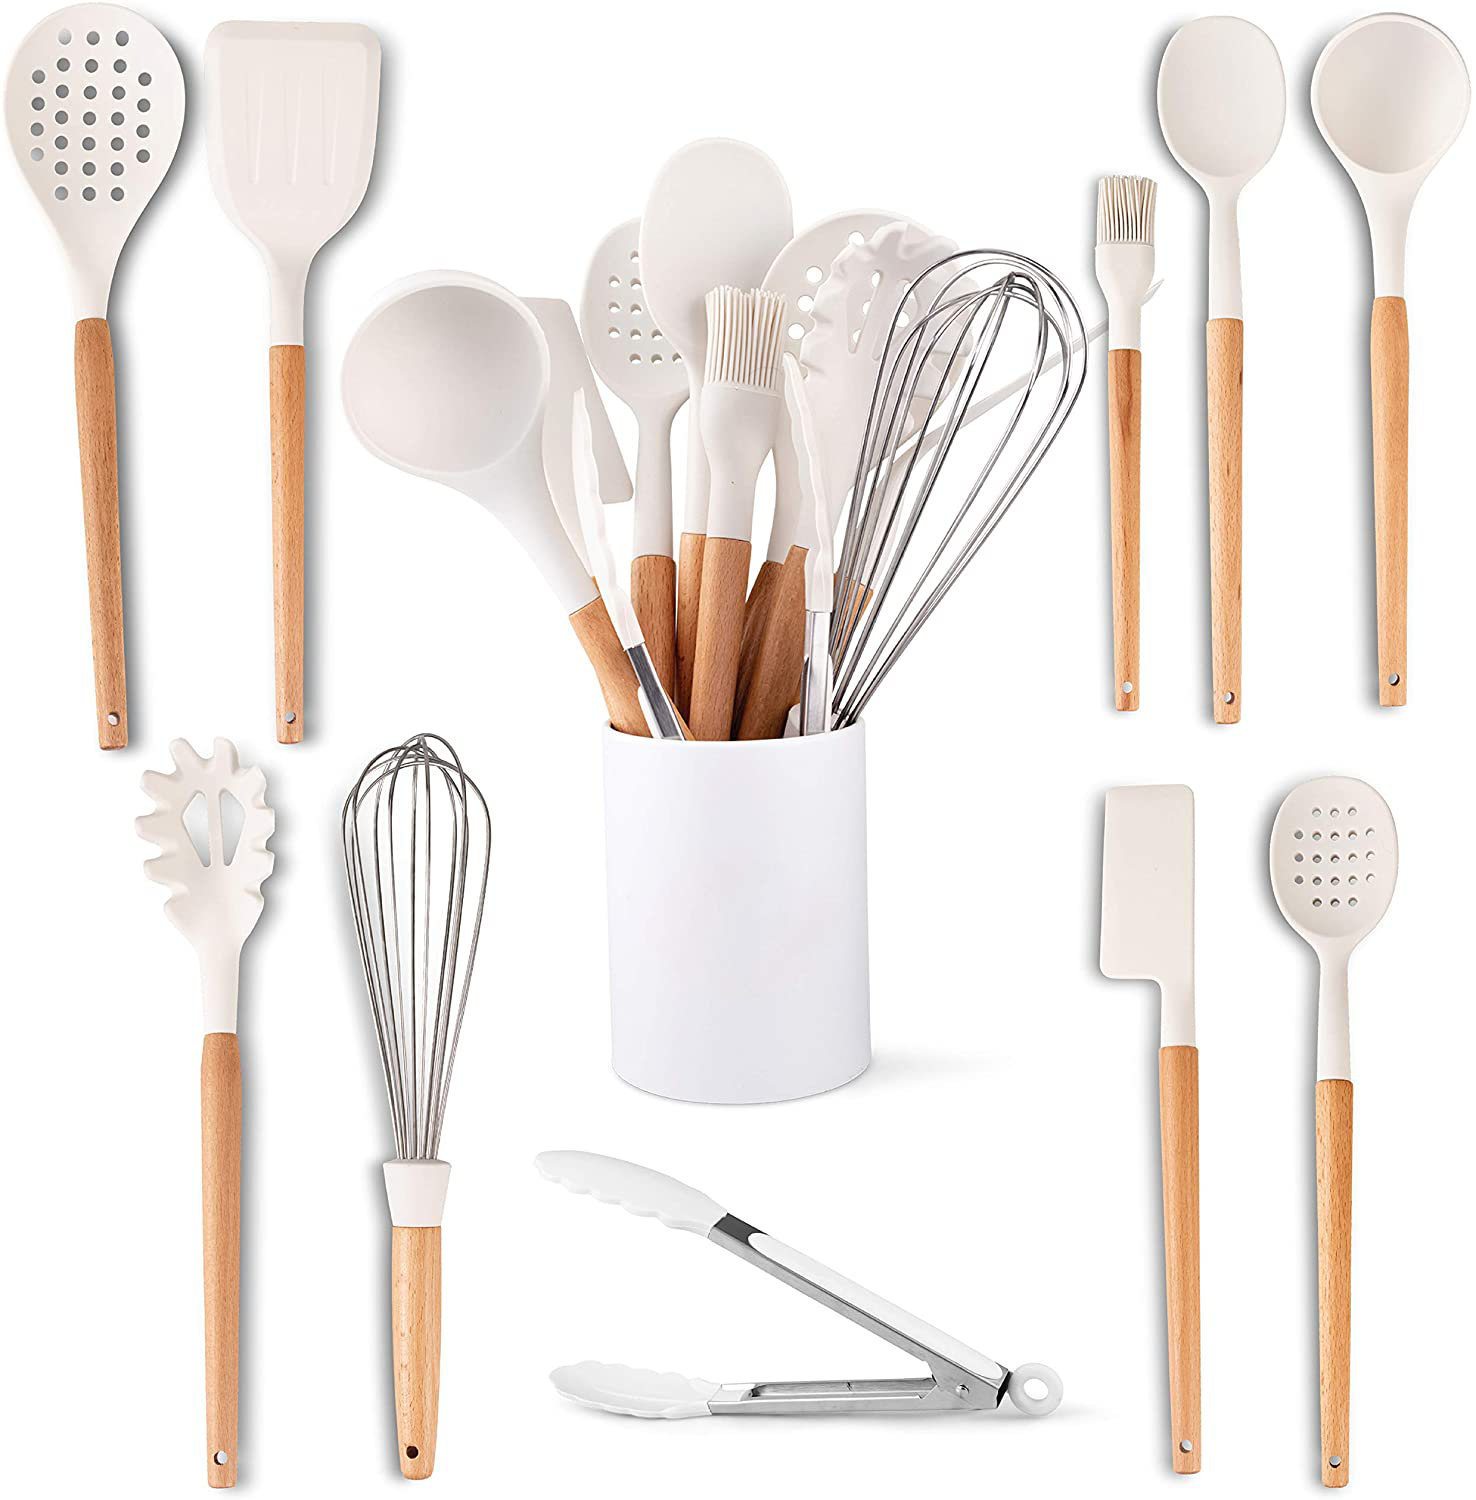 https://assets.wfcdn.com/im/33475927/compr-r85/1624/162429865/11-piece-silicone-assorted-kitchen-utensil-set.jpg